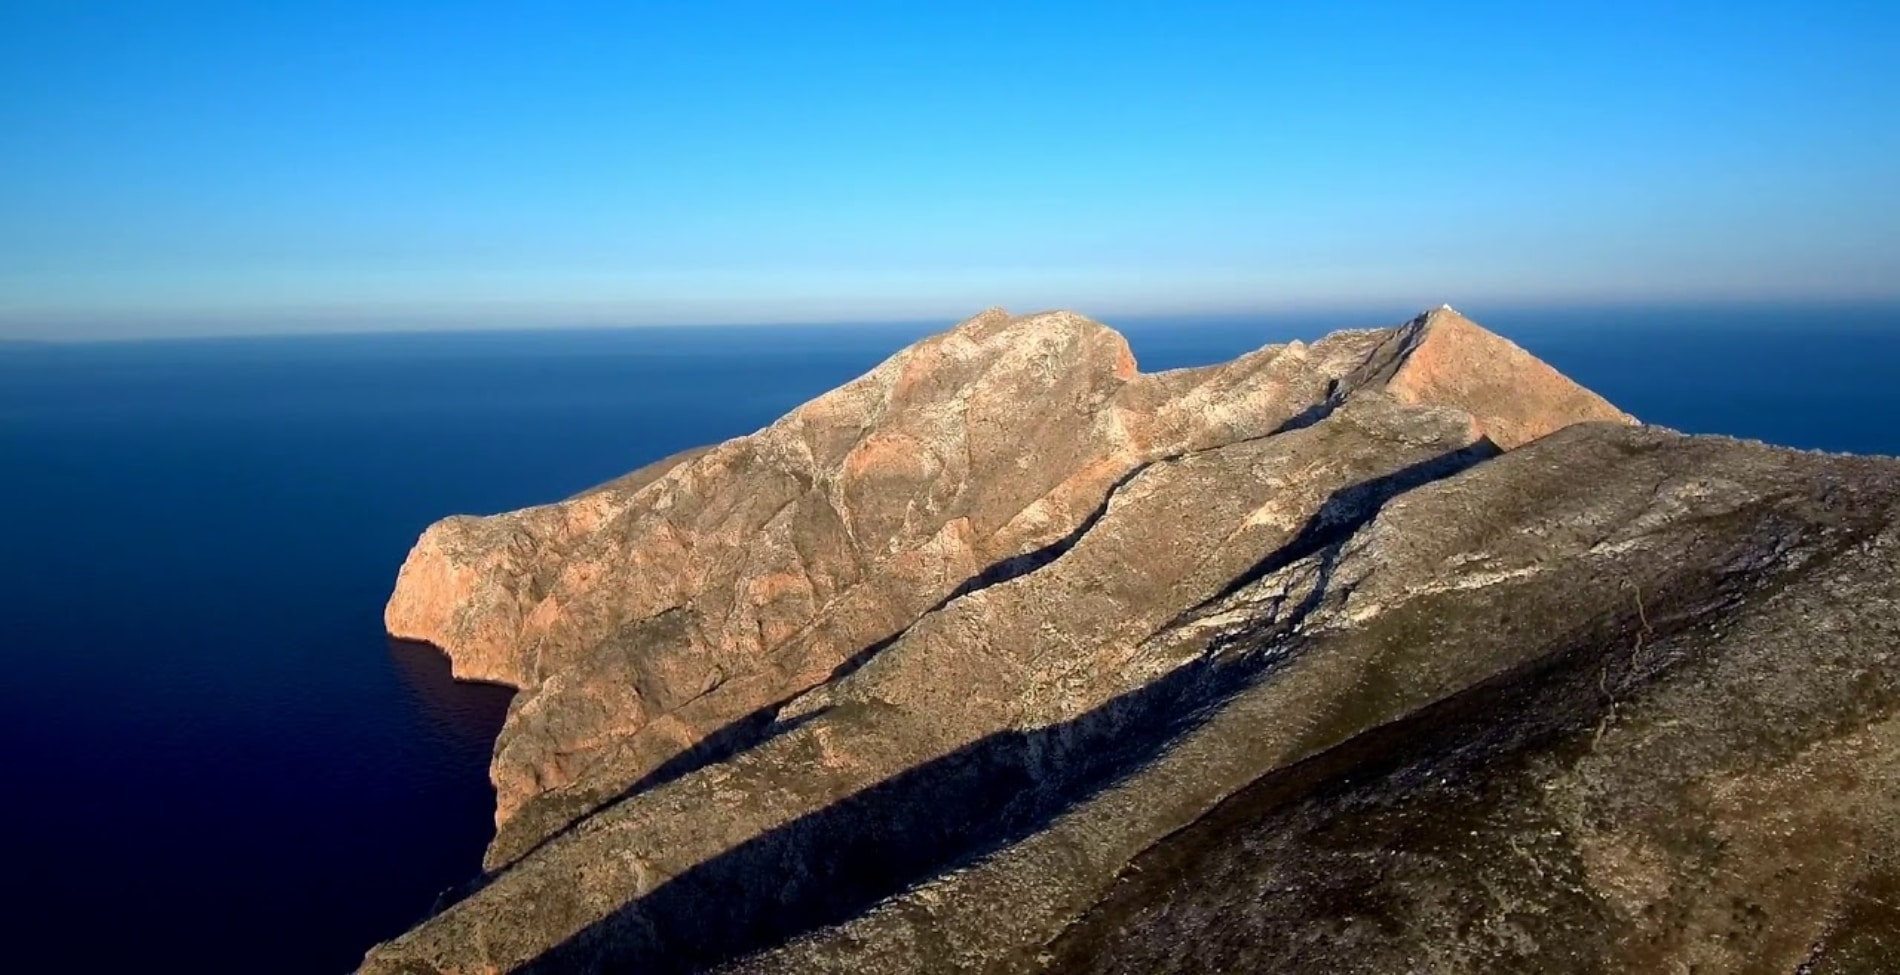 ΕΚΠΛΗΚΤΙΚΟ:Στην ΕΛΛΑΔΑ βρίσκεται ο δεύτερος μεγαλύτερος μονόλιθος της Μεσογείου![βιντεο]